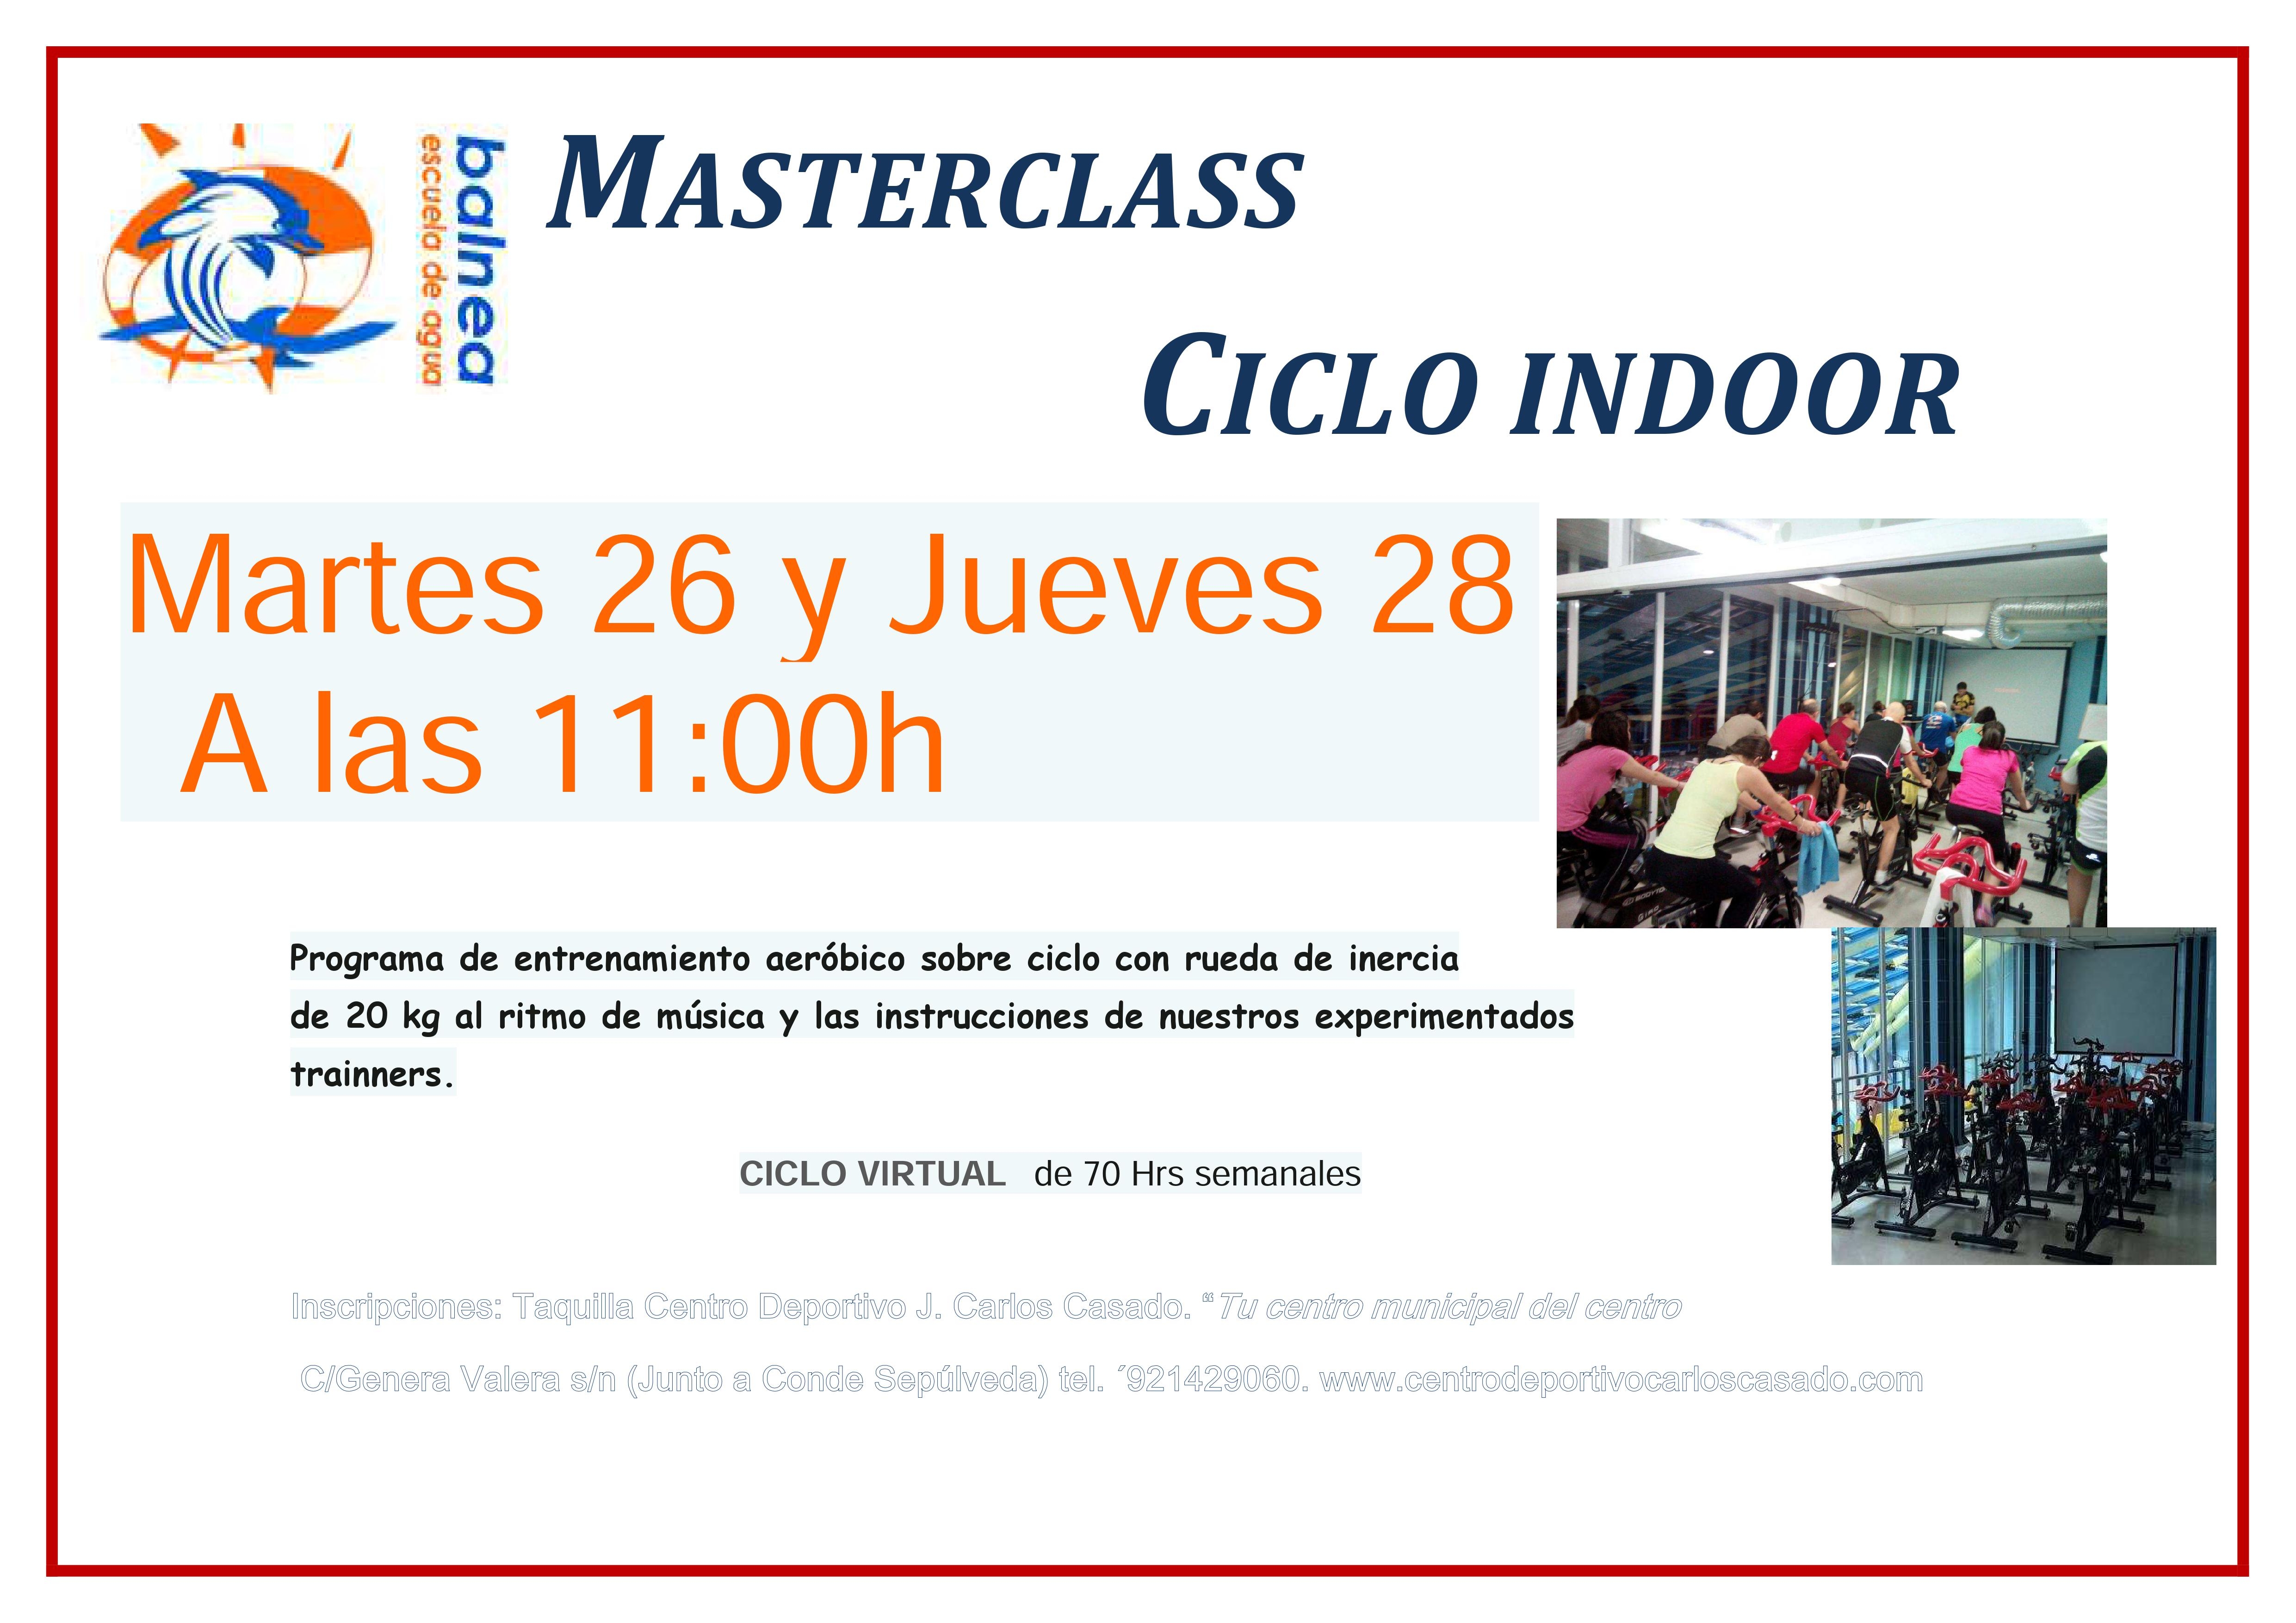 Masterclass de Ciclo Indoor en la Piscina “José Carlos Casado”